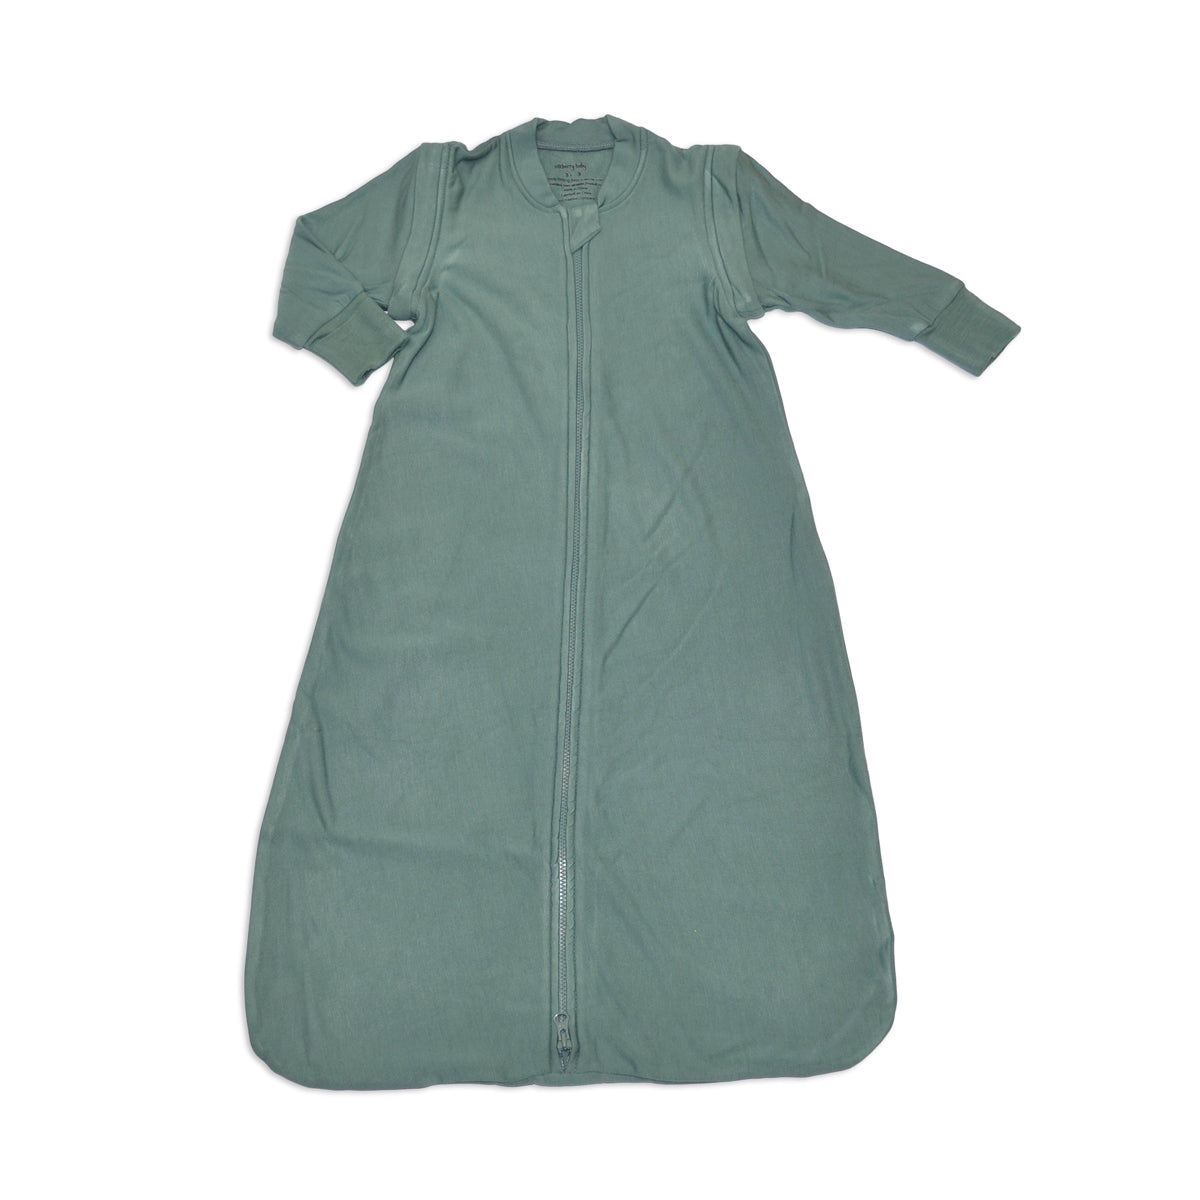 bamboo fleece sleep sack with detachable sleeves 0.5 tog